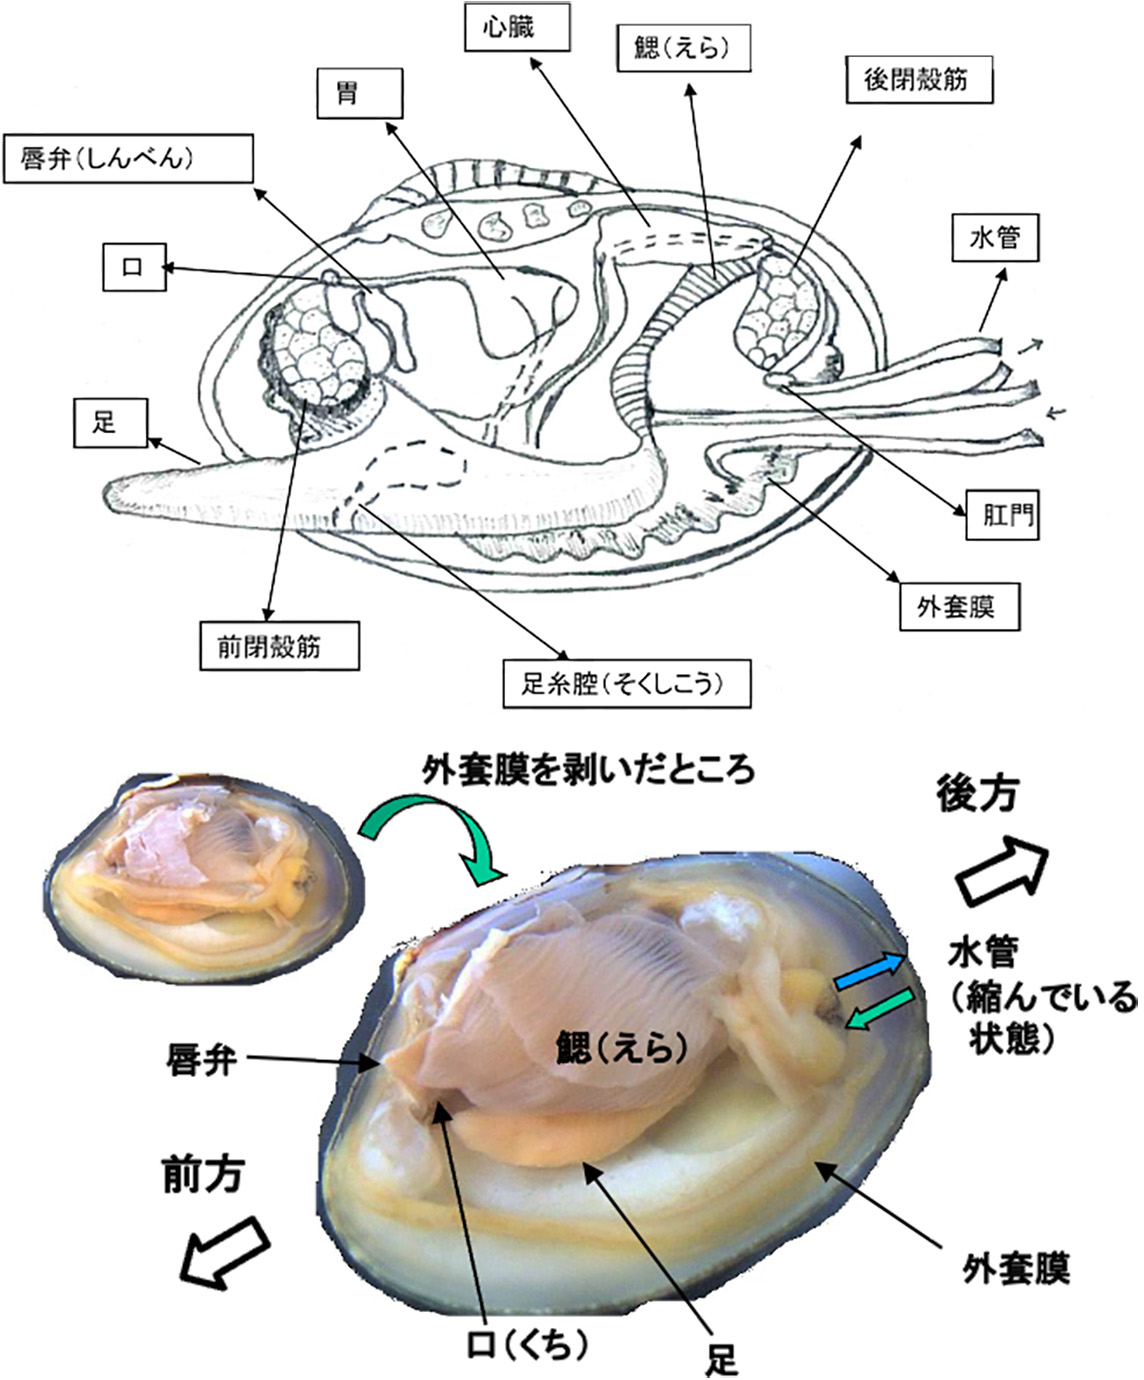 図1　アサリを例にした二枚貝の解剖図（上）と軟体部の写真（下）